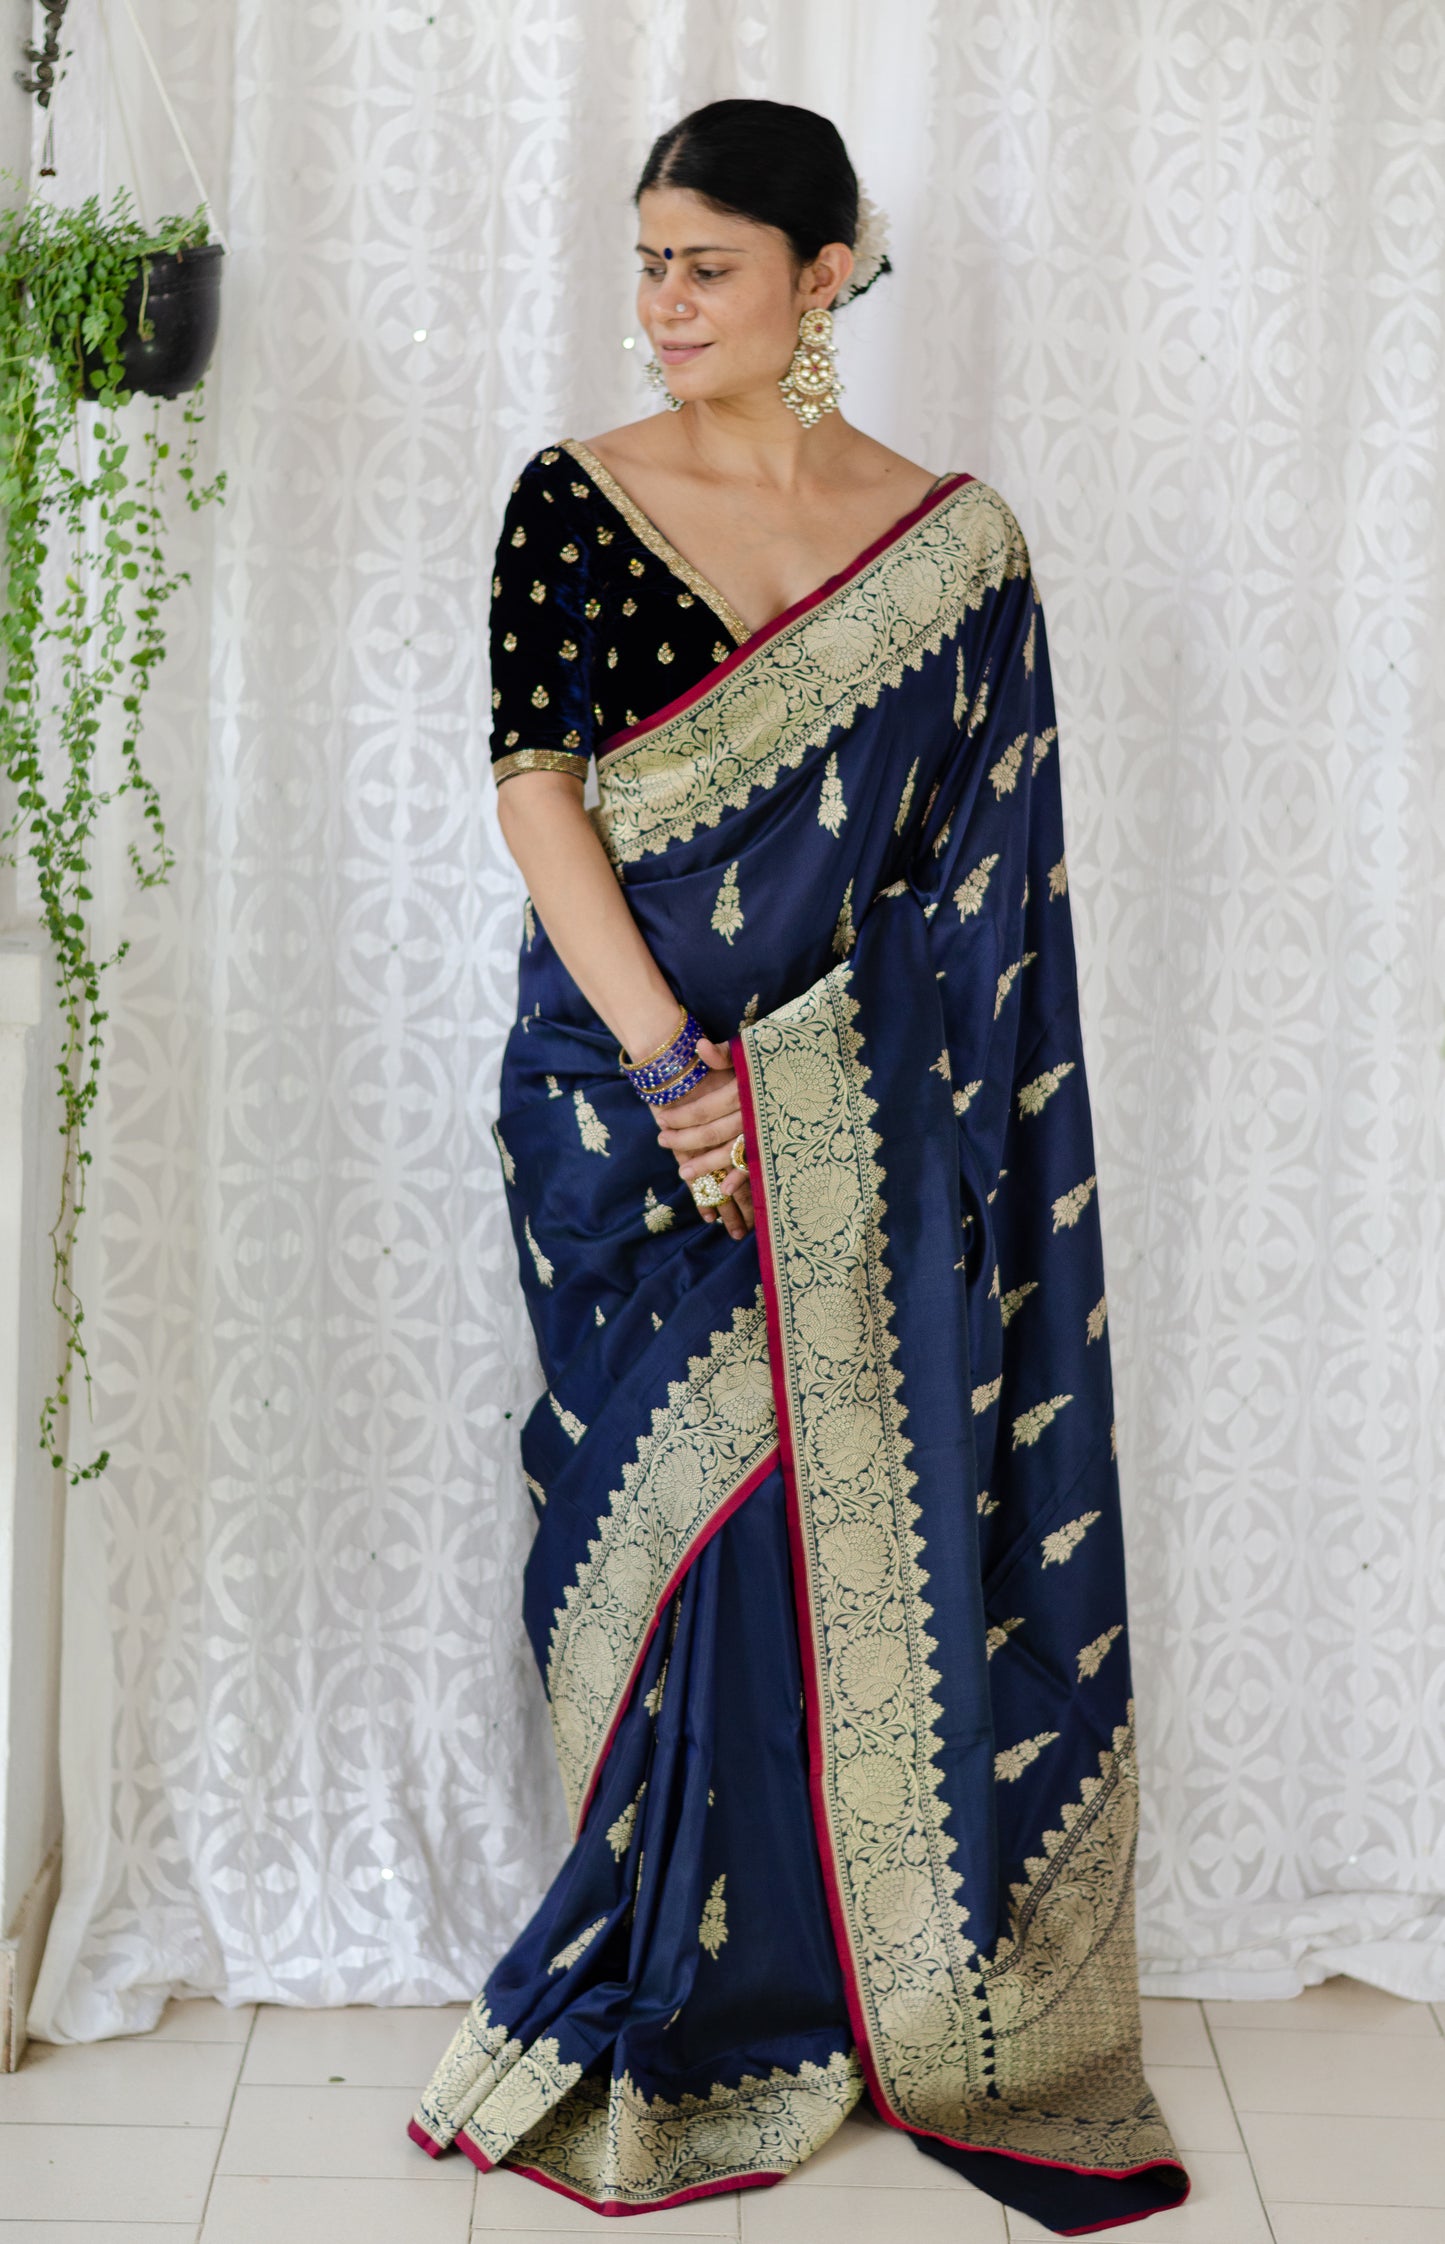 Deep Navi Bllue Colour  Meenakari /Silver Jangle /Gold  kadwa Weaving Handwoven Katan Mulbery Silk Saree